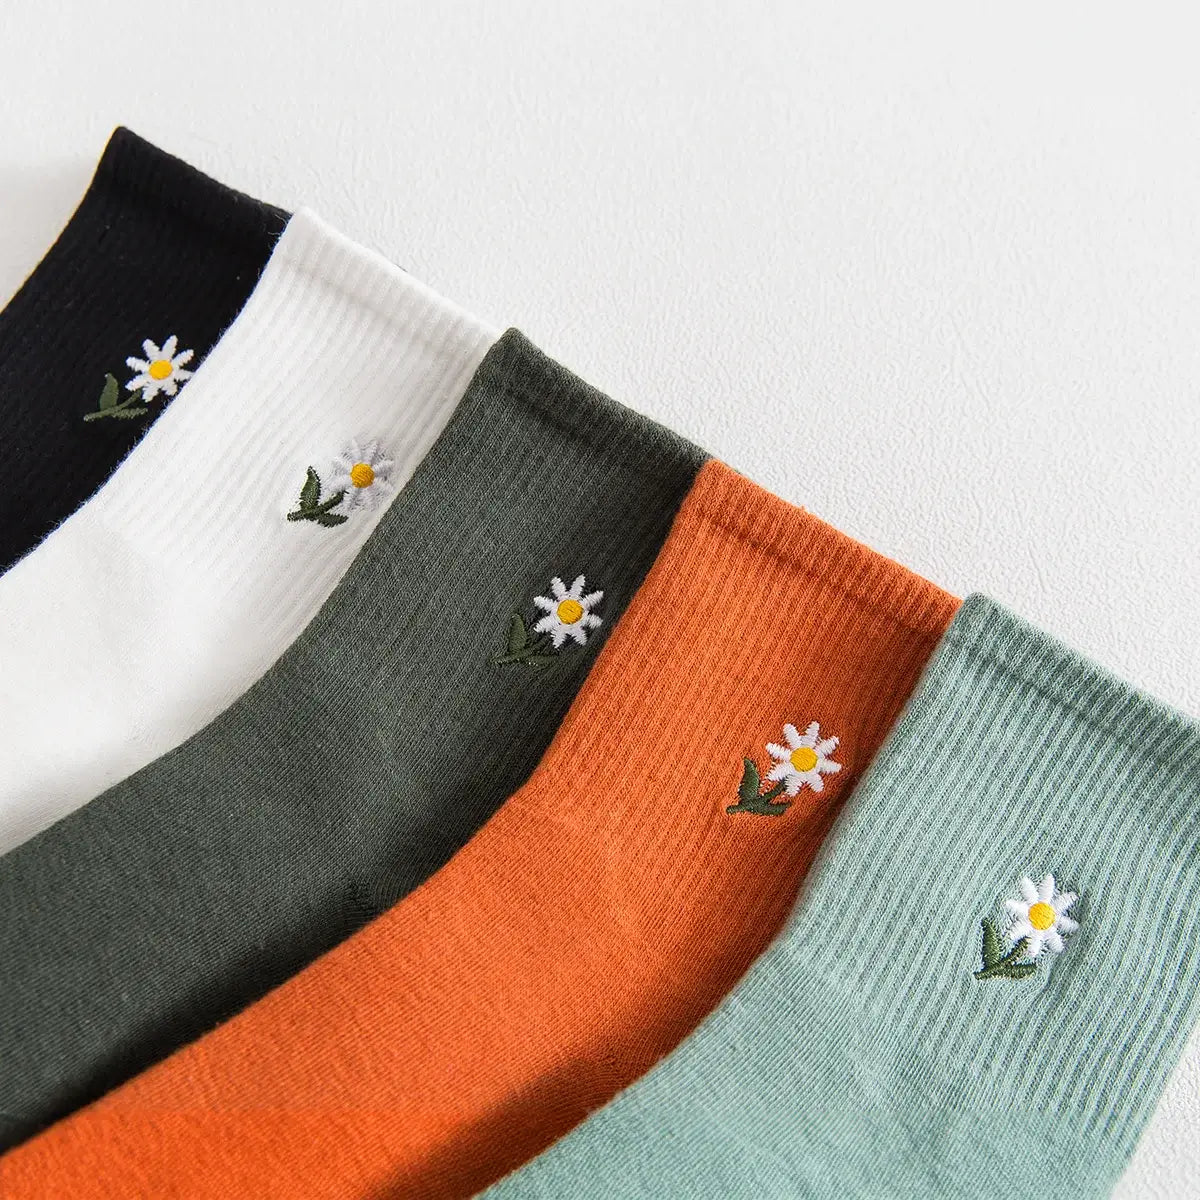 Lot de Chaussettes en coton à motif fleurs pour adultes | Chaussettes douces et confortables | Disponibles en différentes couleurs et motifs | Un cadeau idéal pour les femmes de tous âges